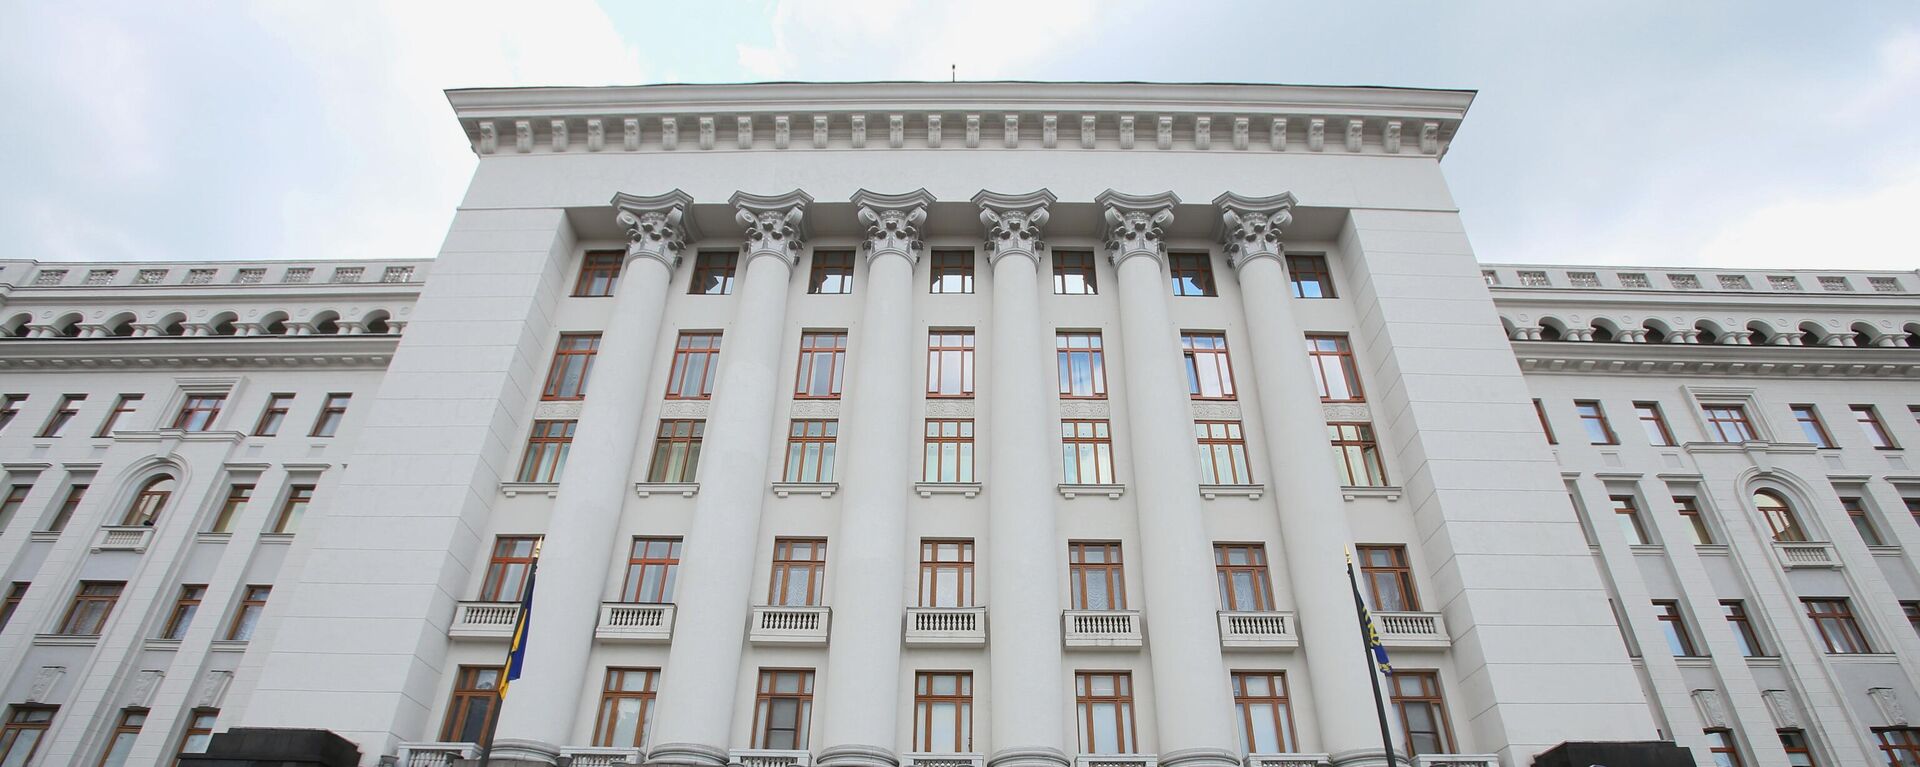 Зграда председништва у Кијеву - Sputnik Србија, 1920, 26.10.2021